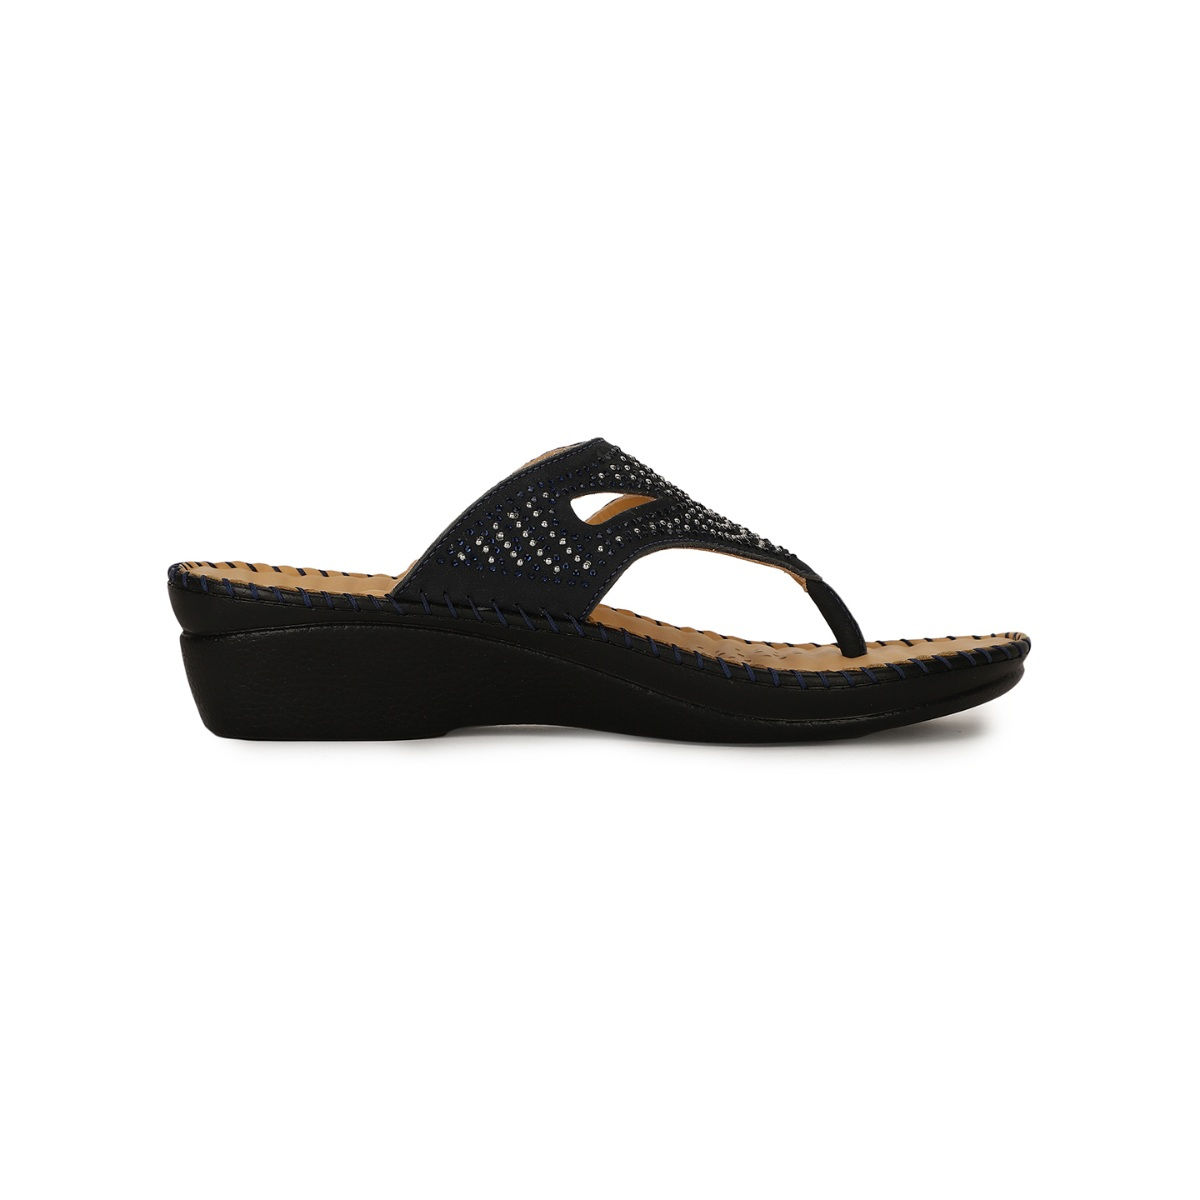 Buy Scholl Embellished Black Sandals Online